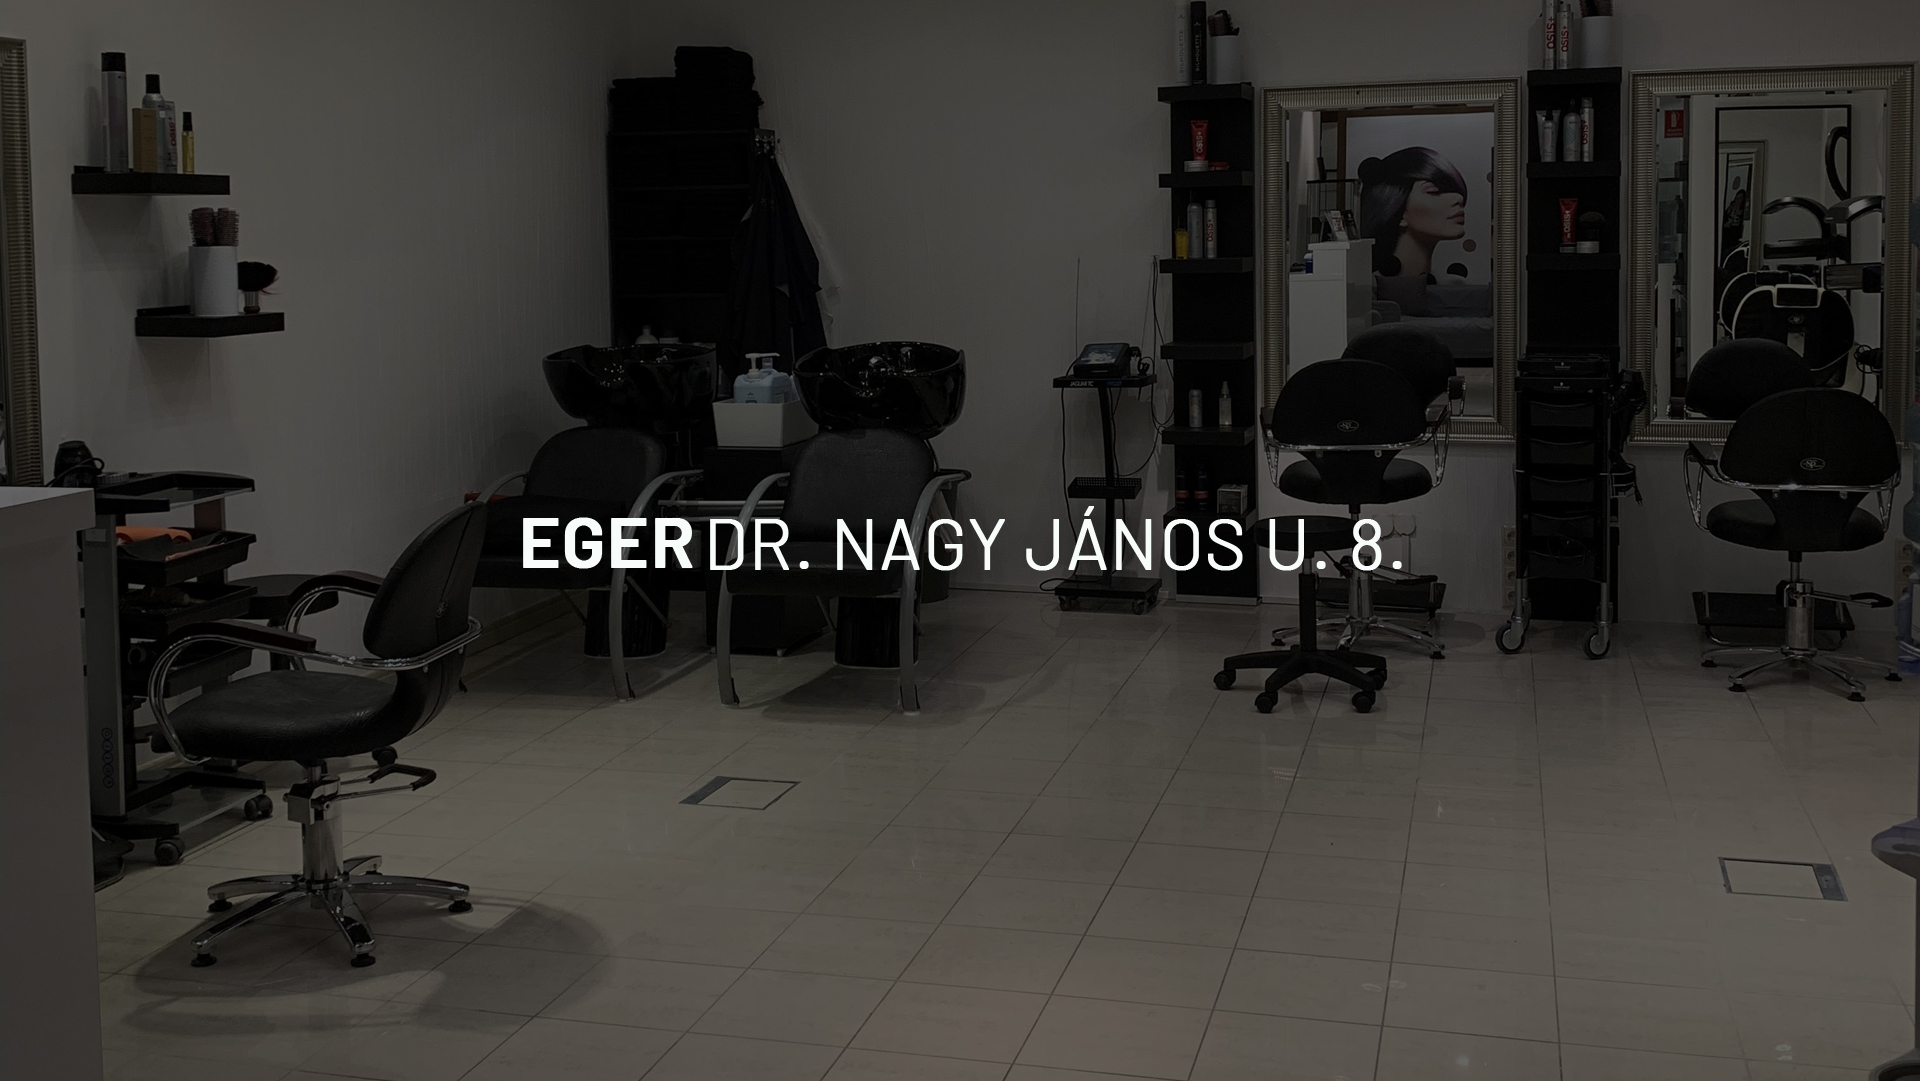 eger_dr.jpg